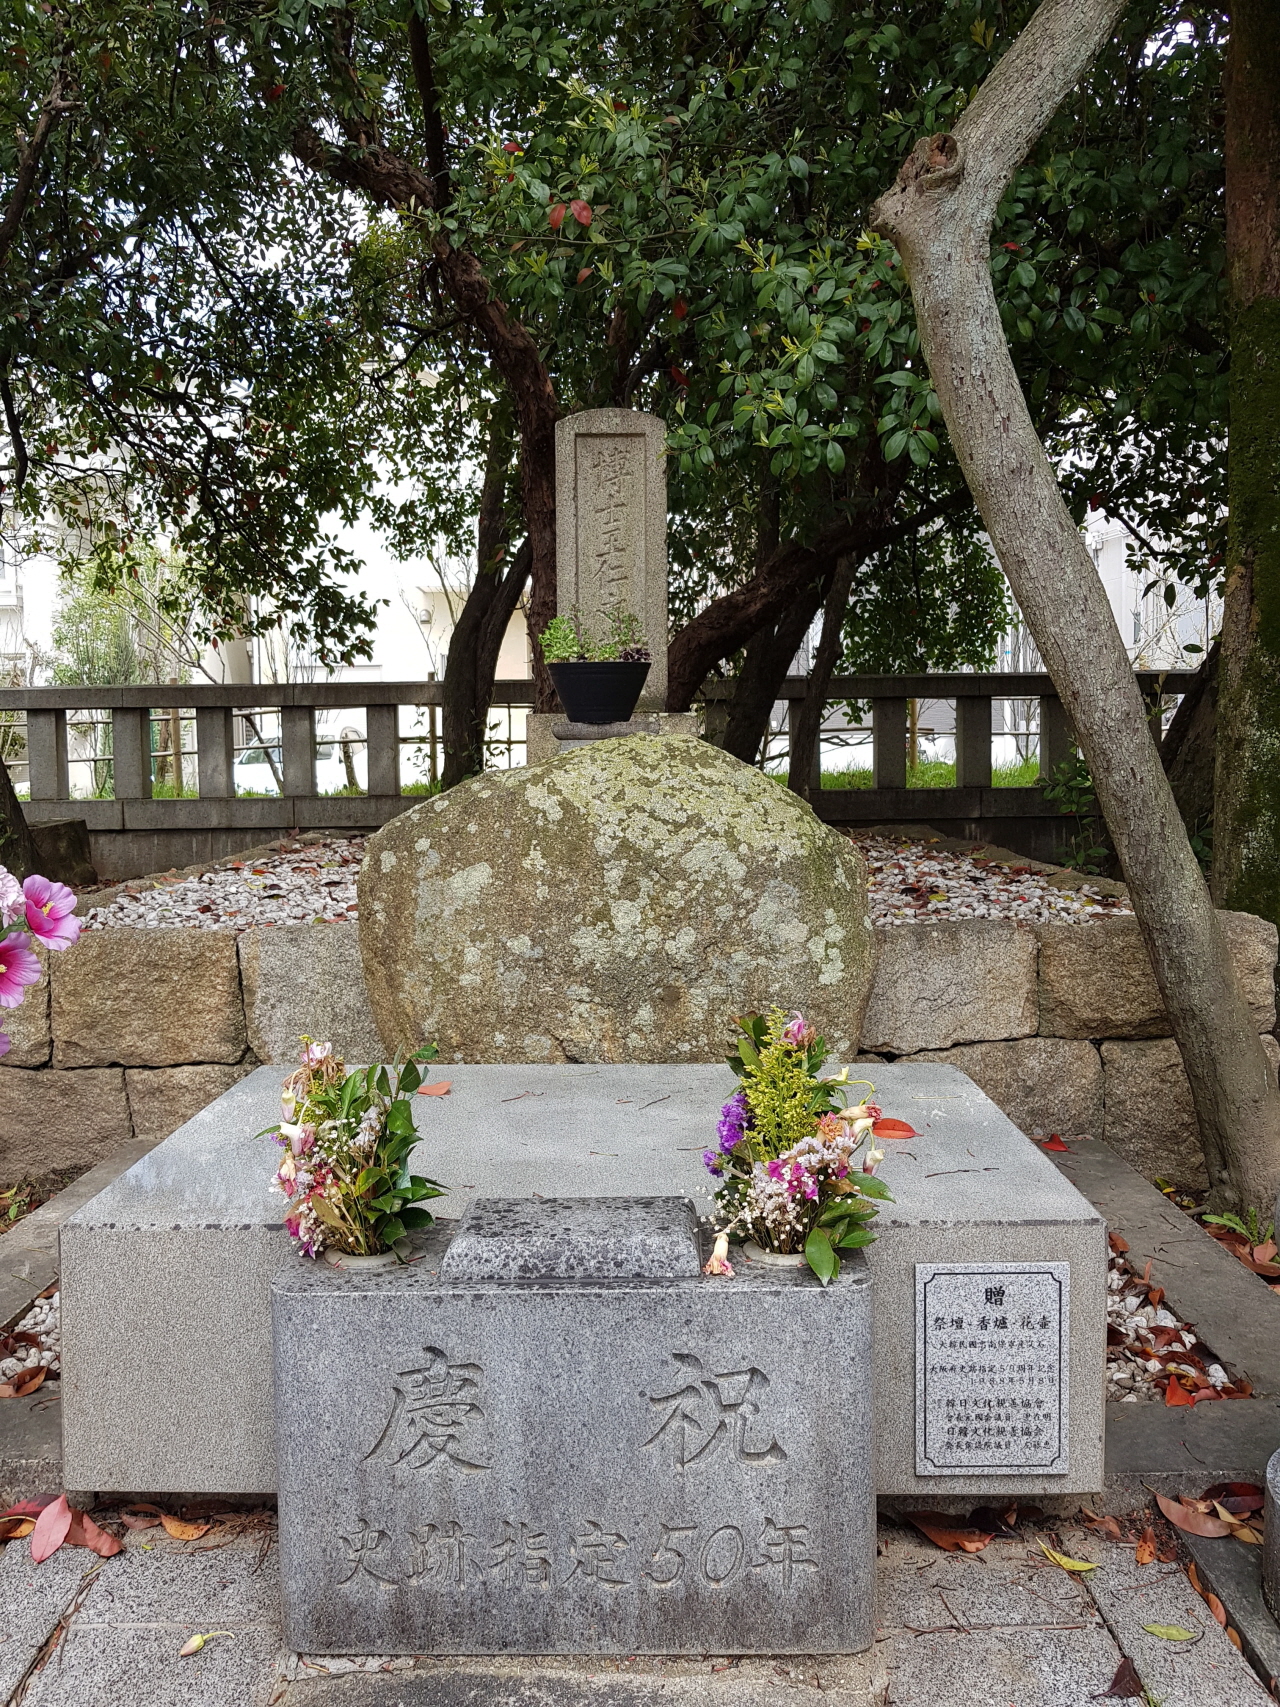 일본 히라카타 시 왕인박사묘.1731년 교토의 유학자 나미카와 고이치로((竝川五一朗)는 도슌(道俊)의 책을 근거로 자연석을 왕인묘로 숭경토록 당지의 영주 구가이 쇼준(久貝正順)에게 진언하고 돌의 뒤쪽에 묘비를 세웠다.